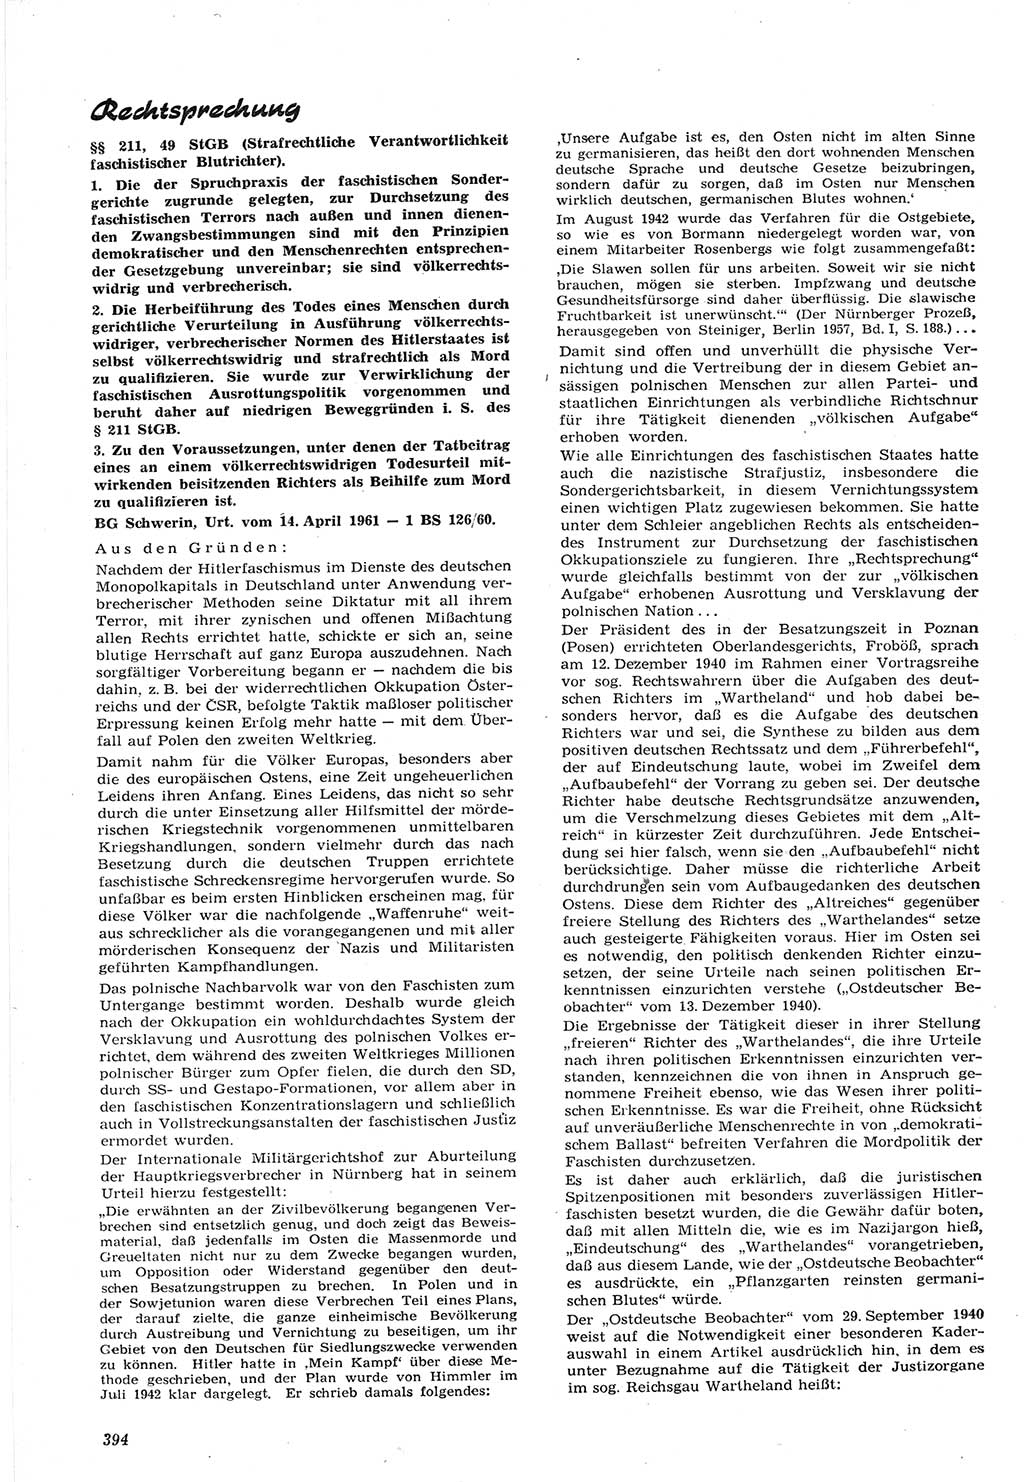 Neue Justiz (NJ), Zeitschrift für Recht und Rechtswissenschaft [Deutsche Demokratische Republik (DDR)], 15. Jahrgang 1961, Seite 394 (NJ DDR 1961, S. 394)